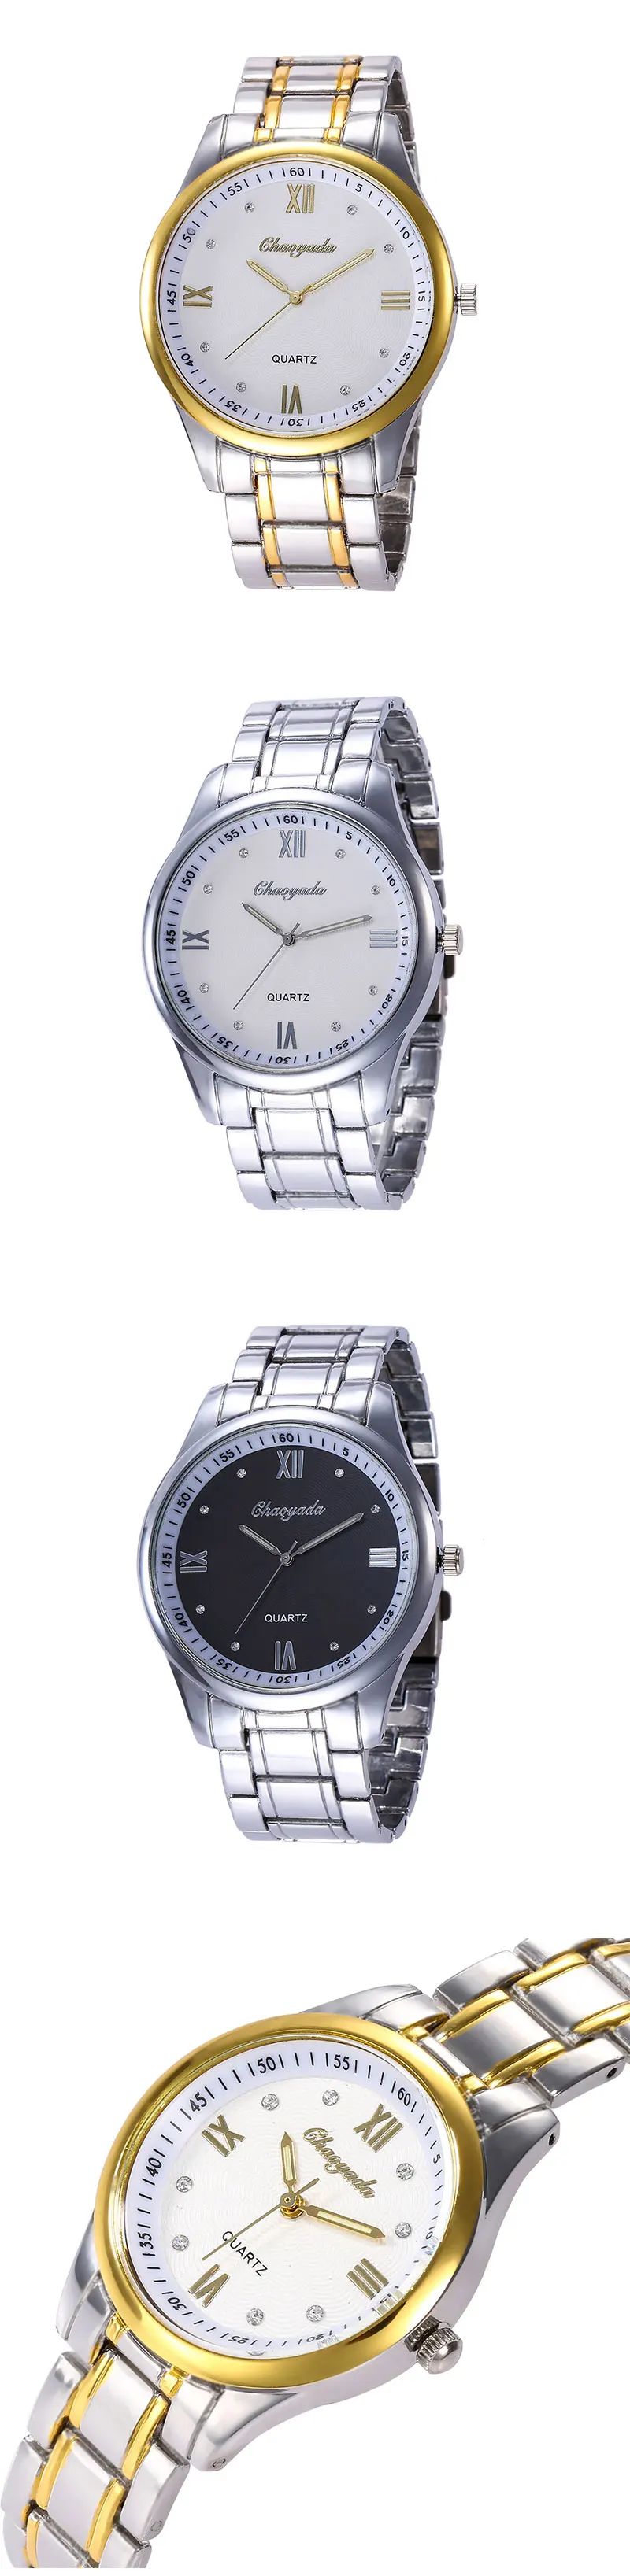 Модные парные часы Классические Стальные кварцевые наручные часы элегантность Бизнес сплав часы Бесплатная доставка Распродажа